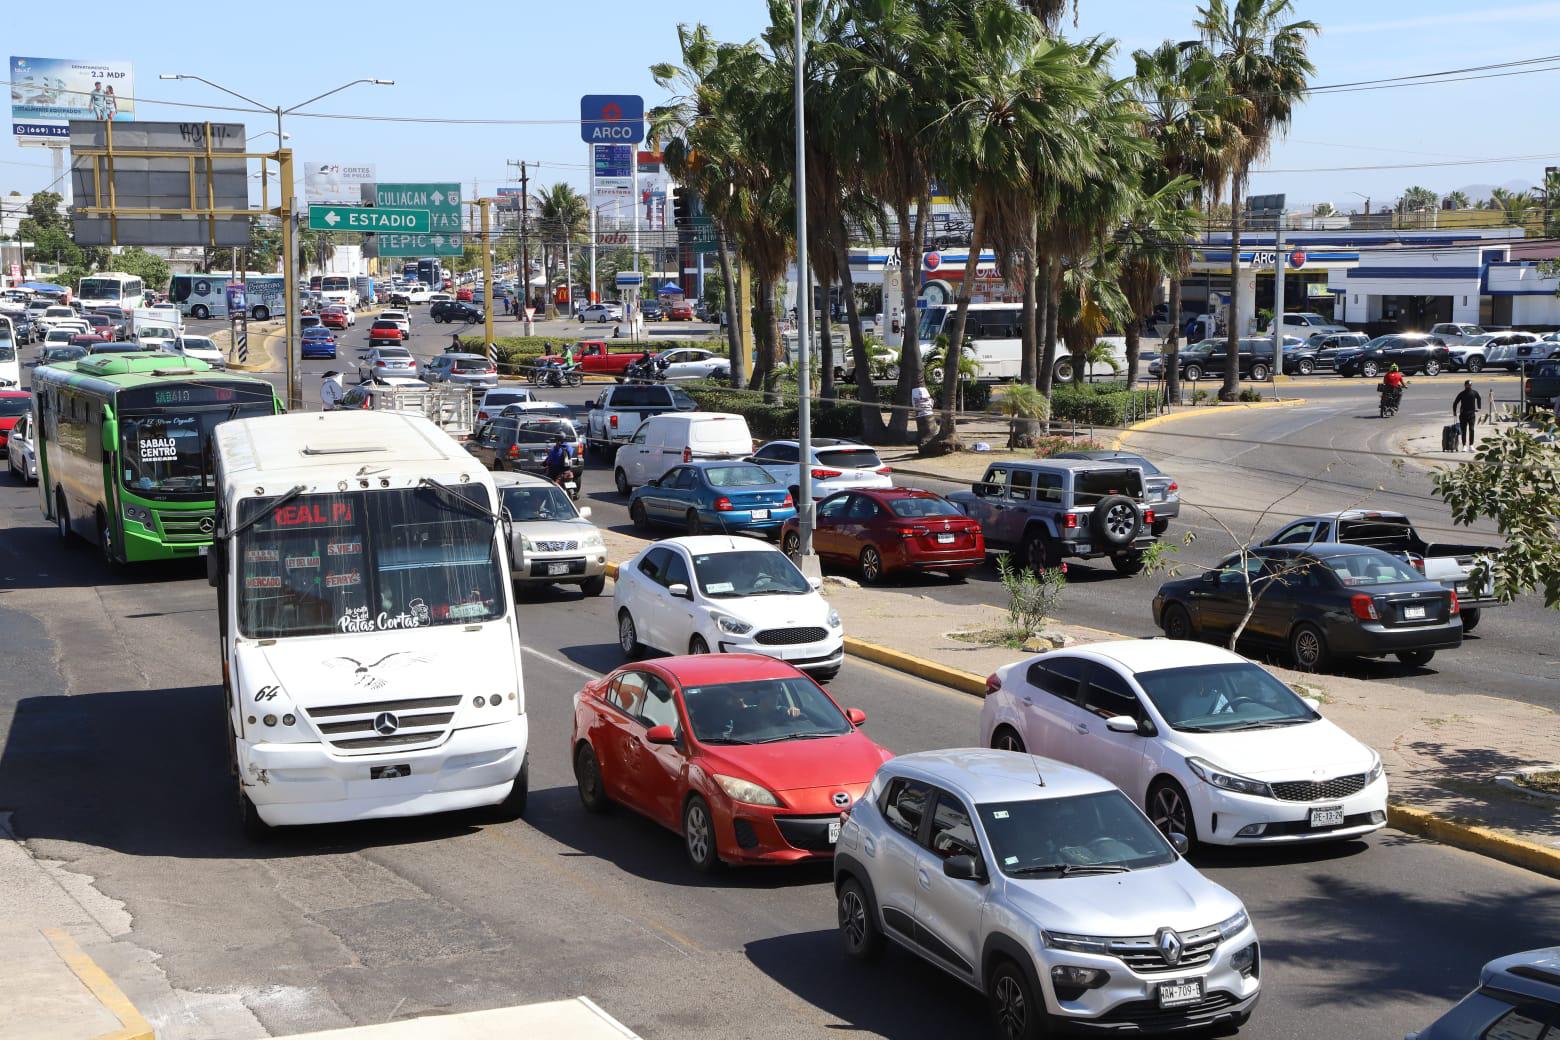 $!Presenta Mazatlán caos vial por segundo día consecutivo por el Triatlón